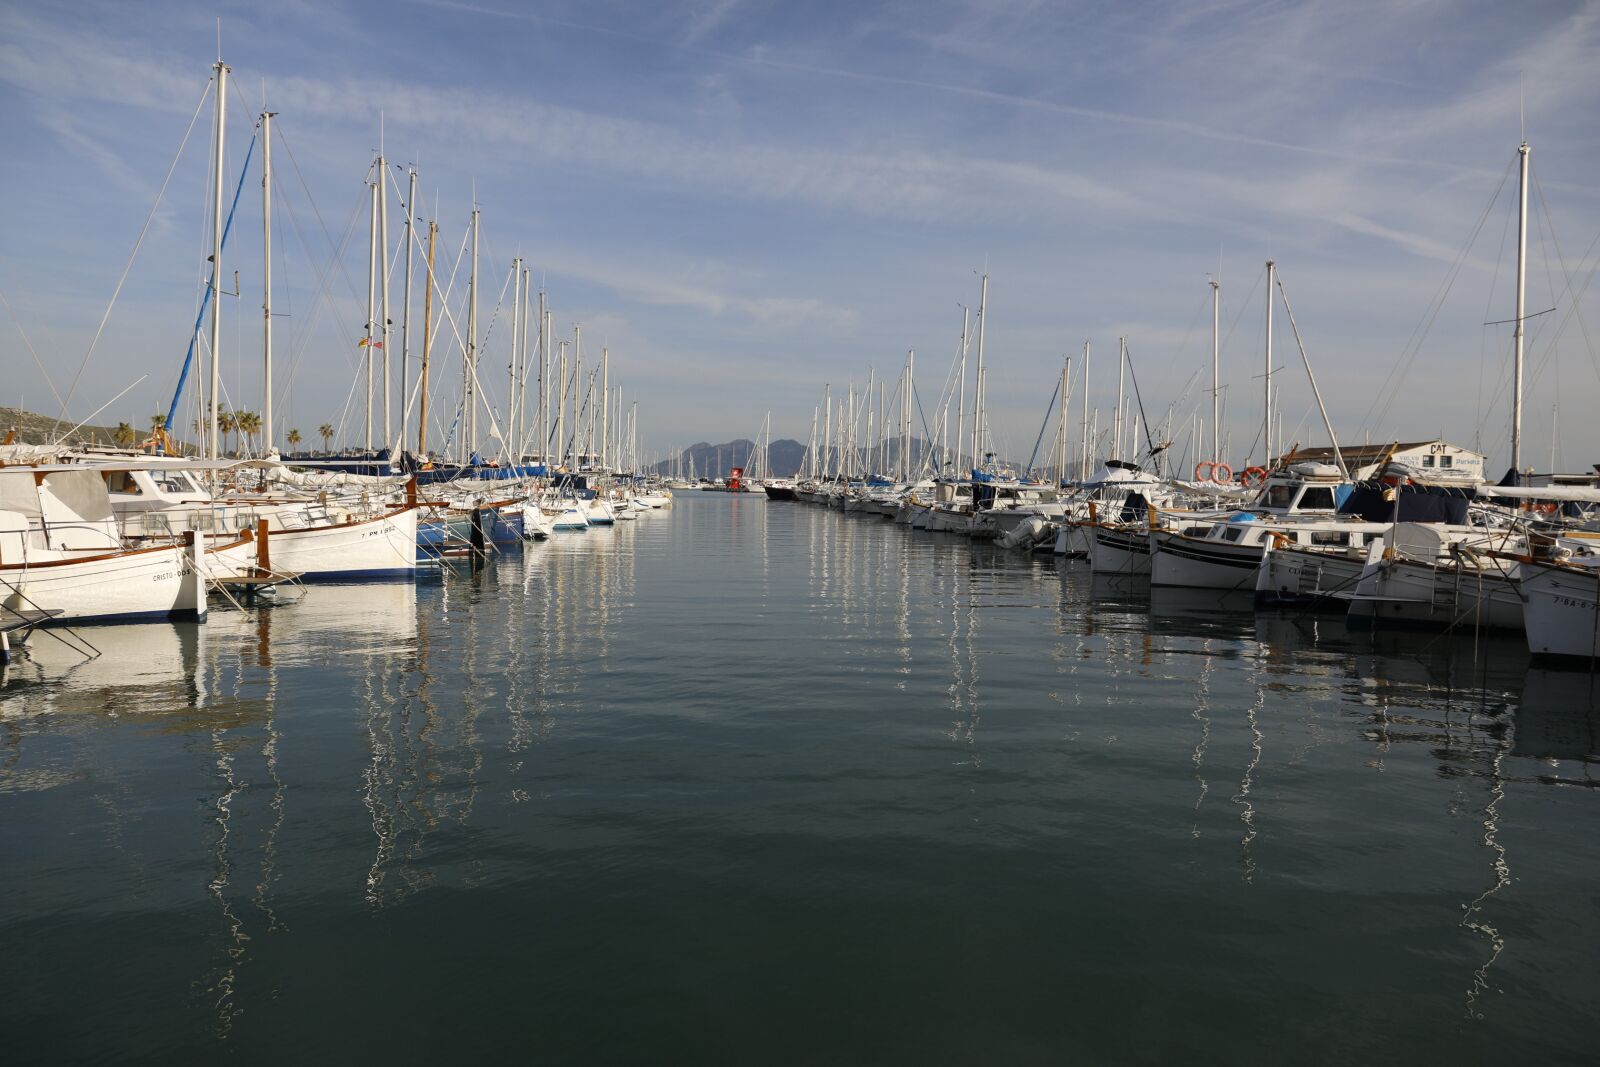 Canon EOS 5D Mark IV sample photo. Port, marina, sailing boats photography